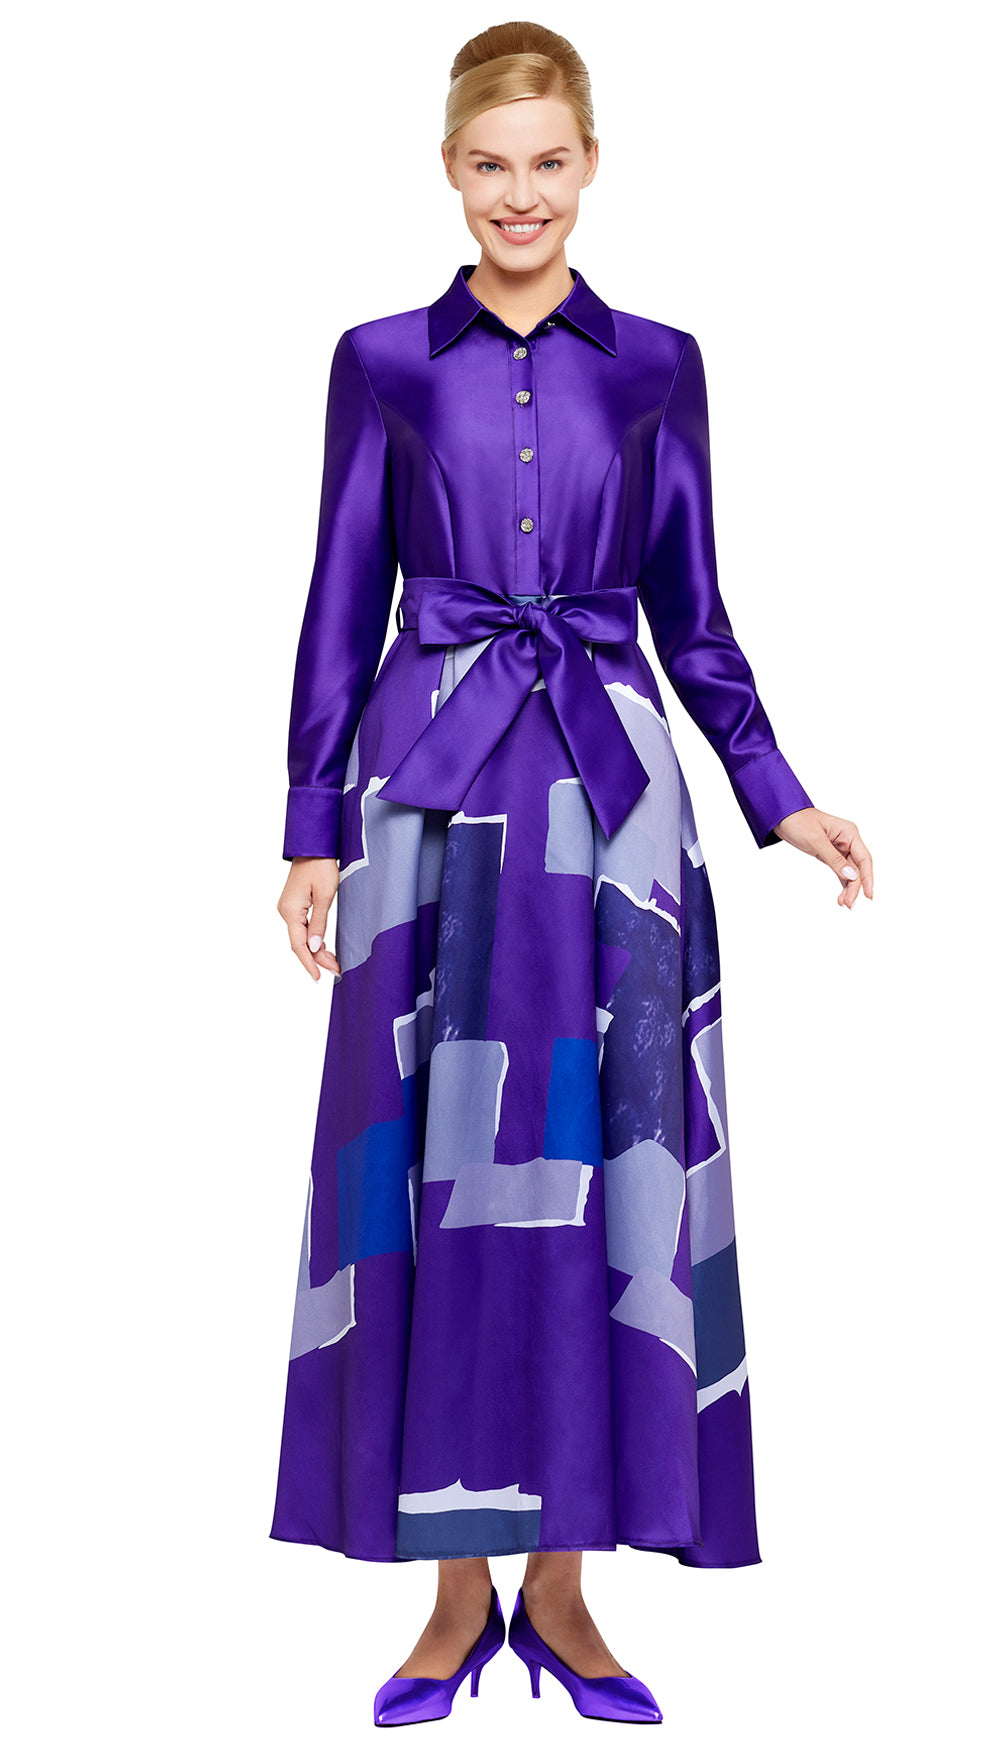 Nina Nischelle Church Dress 2986 - Church Suits For Less